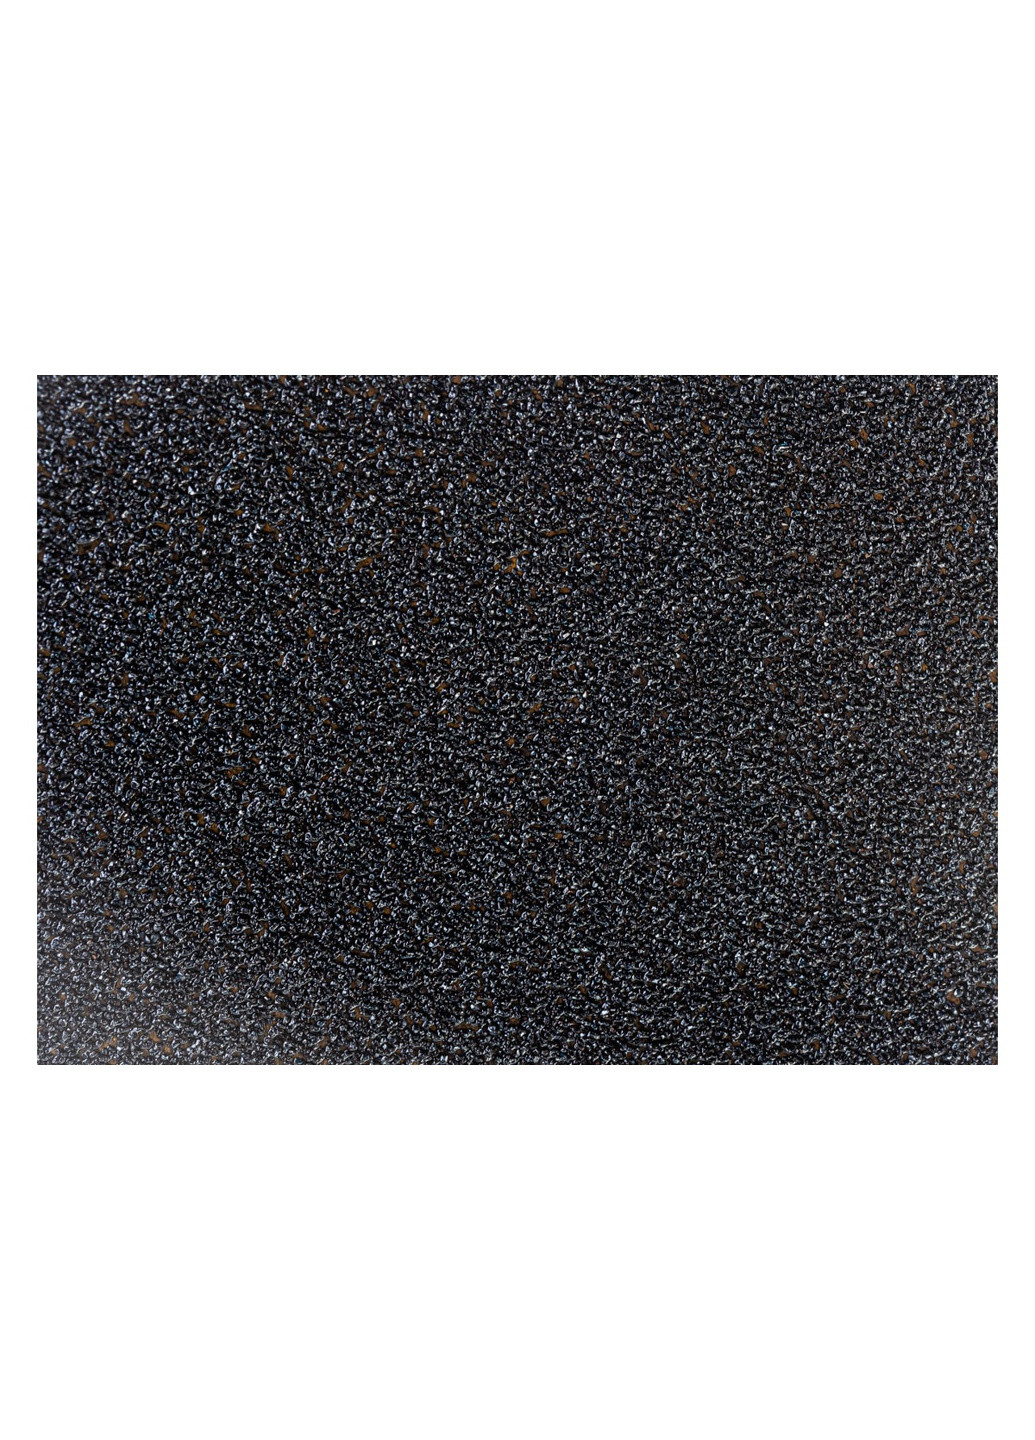 Шліфувальний лист PS8C (230х280 мм, P150) наждачний шліфпапір (21186) Klingspor (295036791)